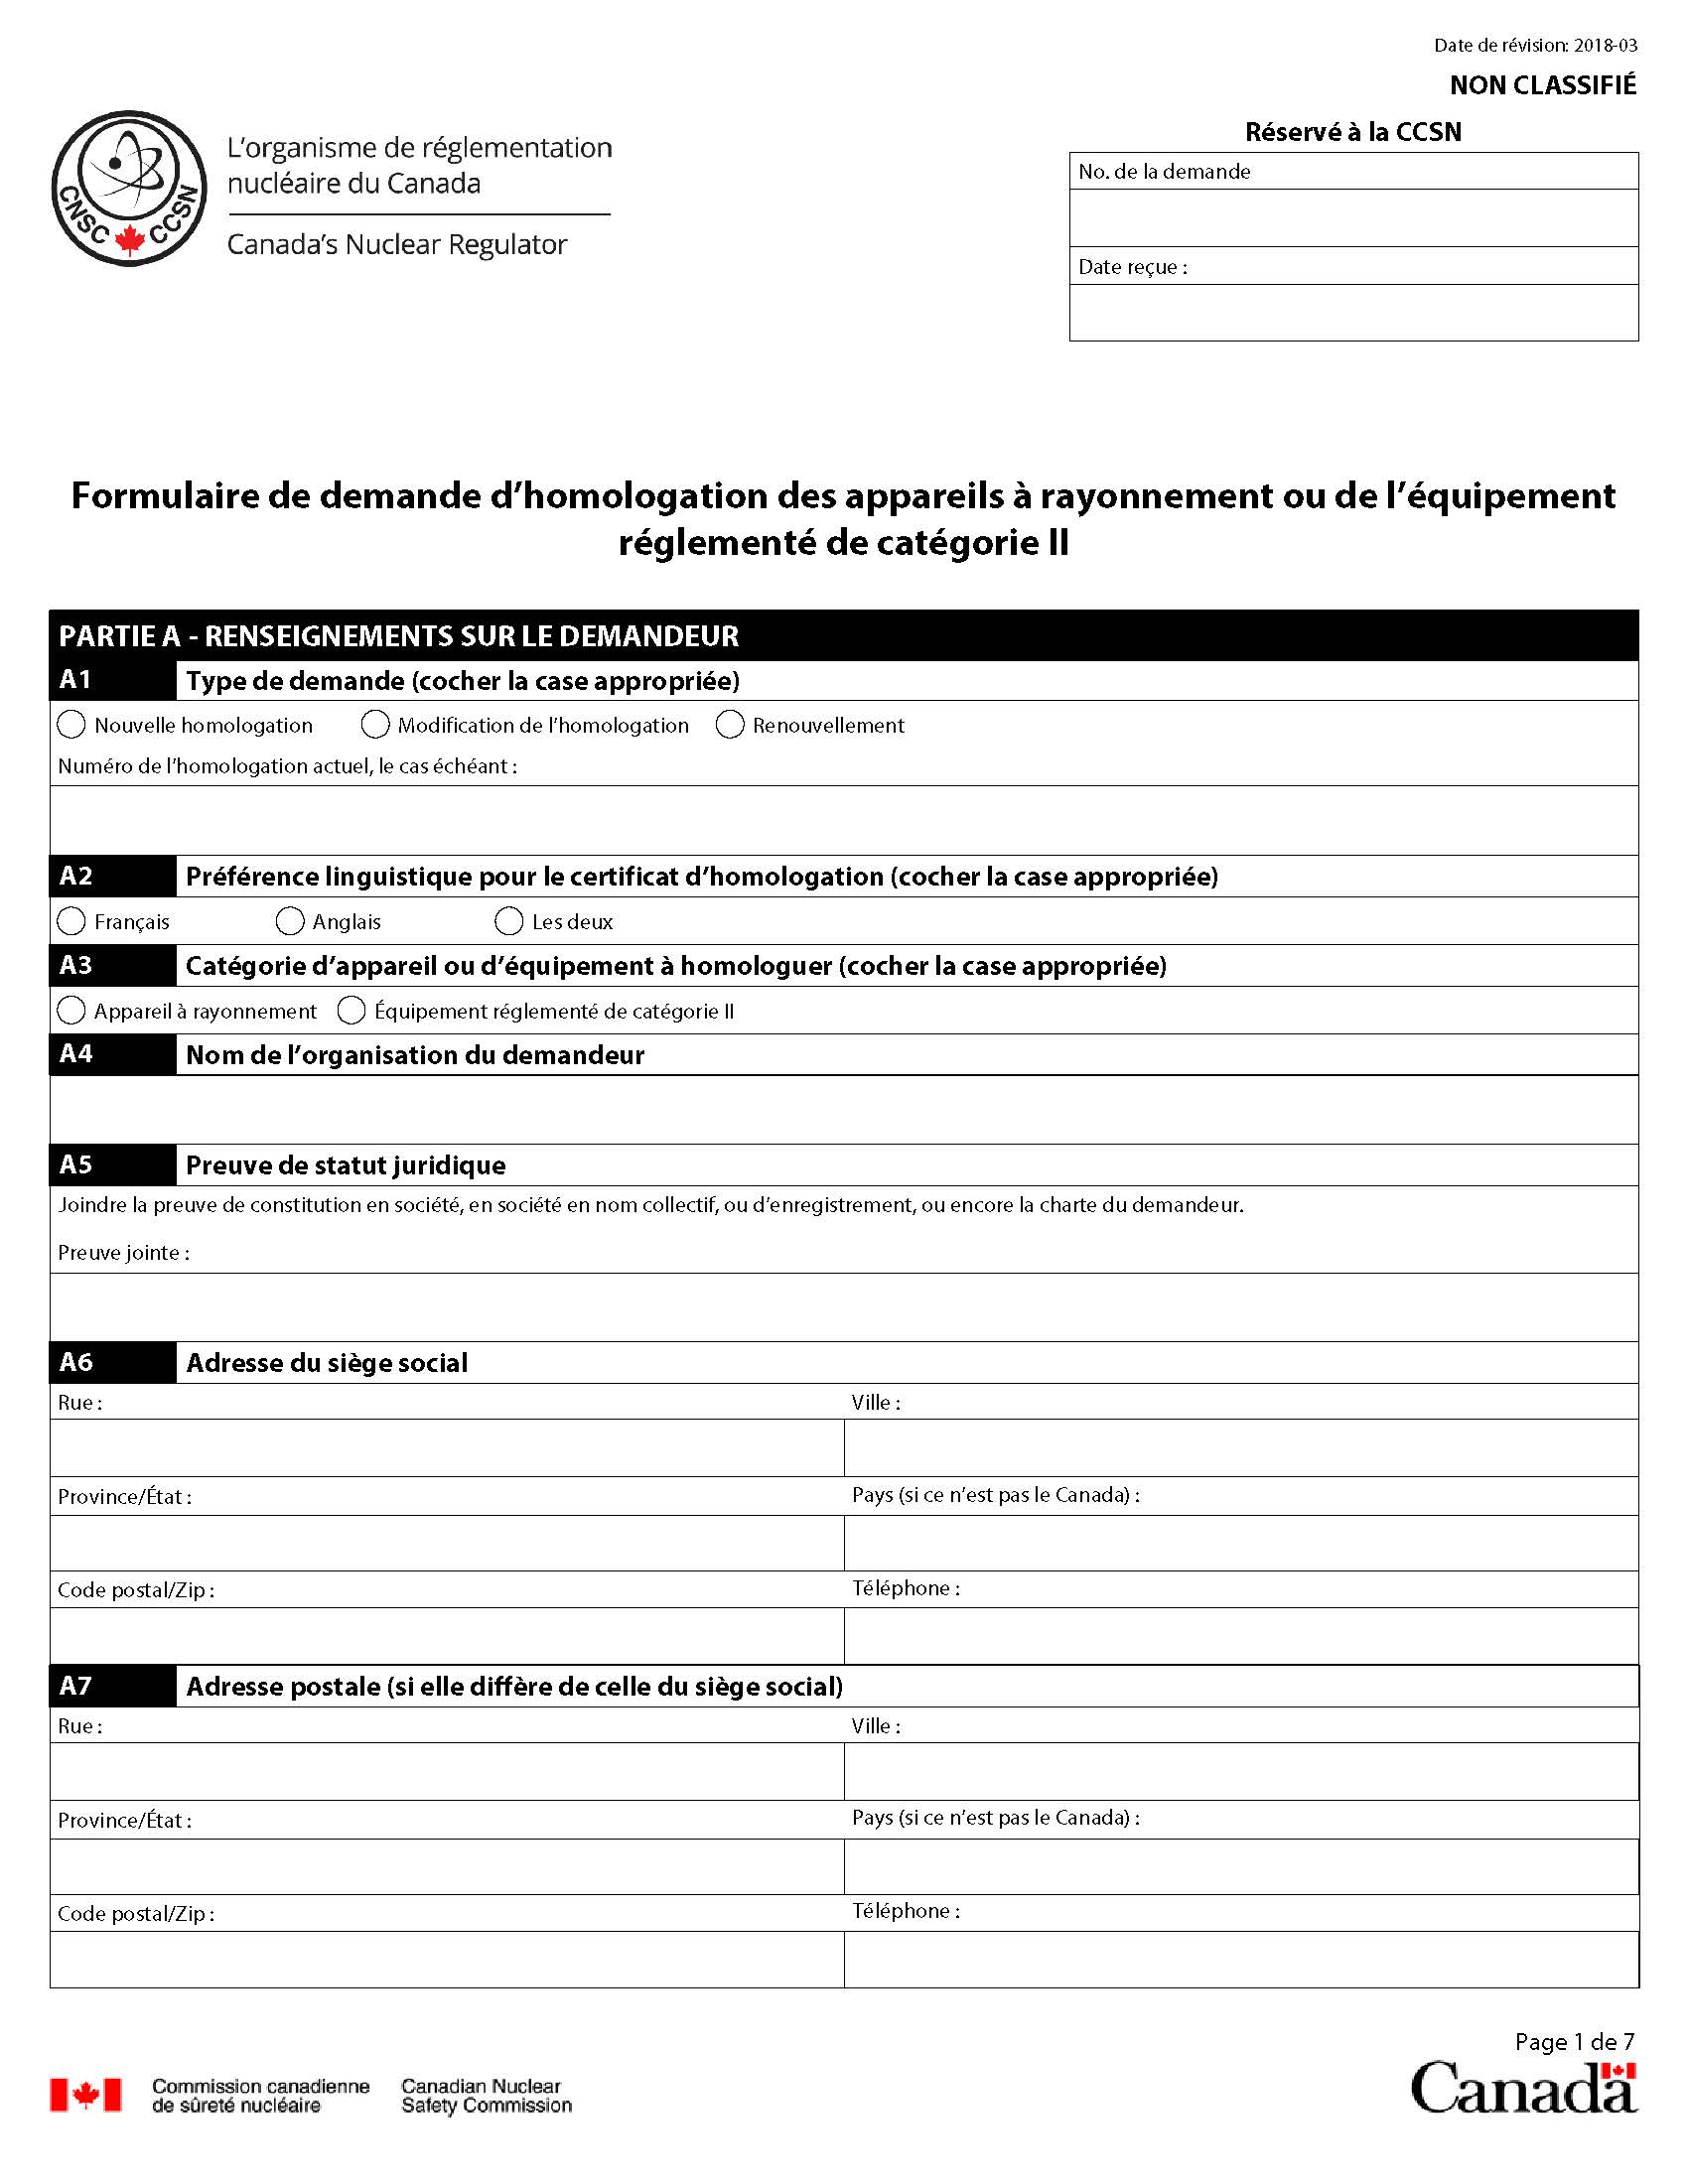 Formulaire de demande d’homologation des appareils à rayonnement ou de l’équipement de catégorie II : page 1